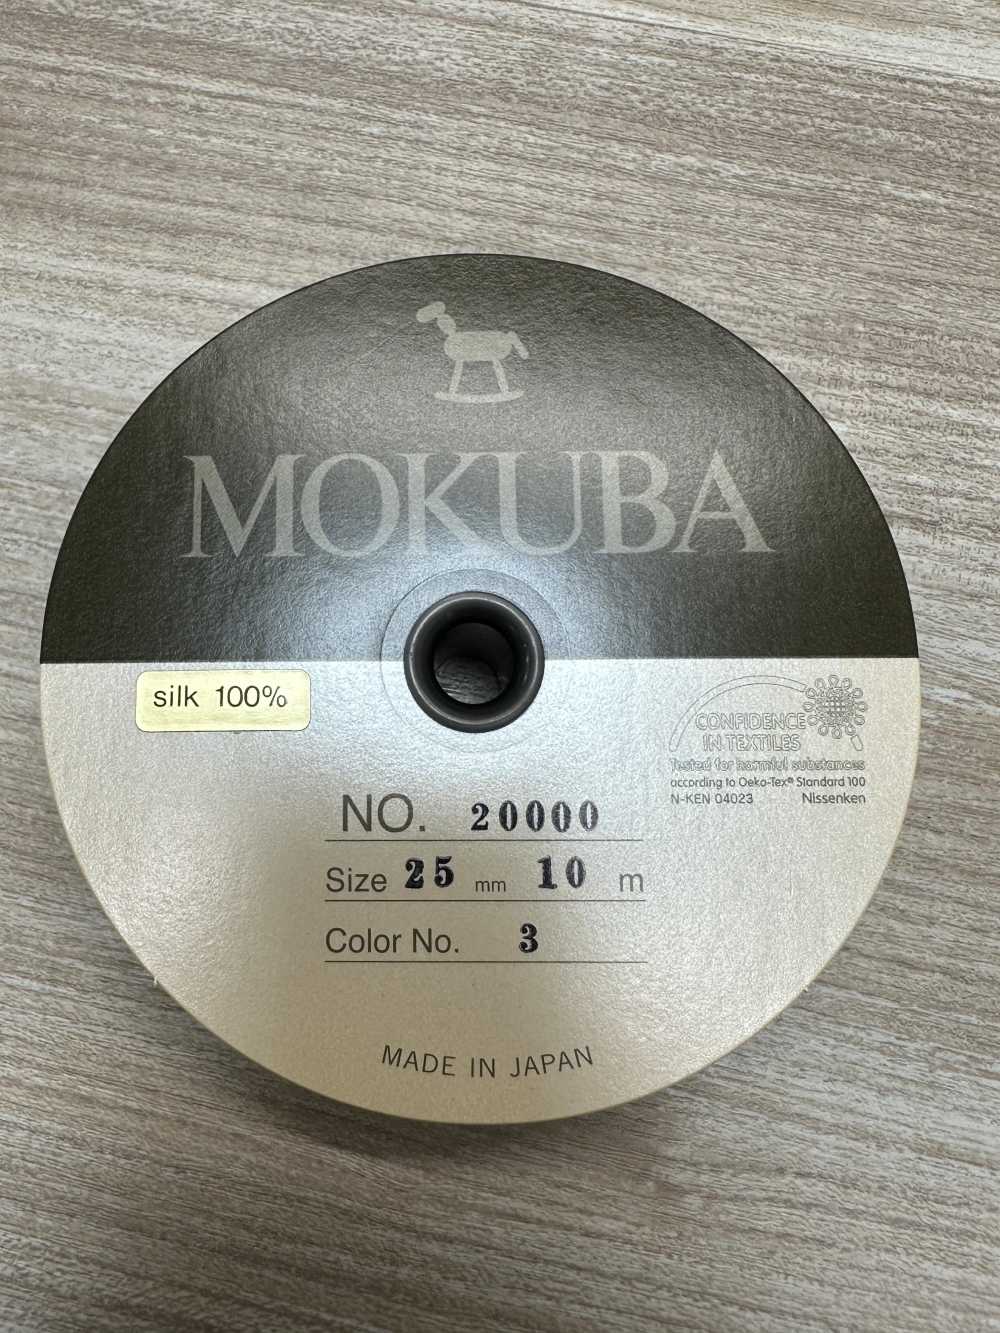 20000 MOKUBA 그로그랭 그로그런 테이프【아울렛】[리본 테이프 코드] Mokuba